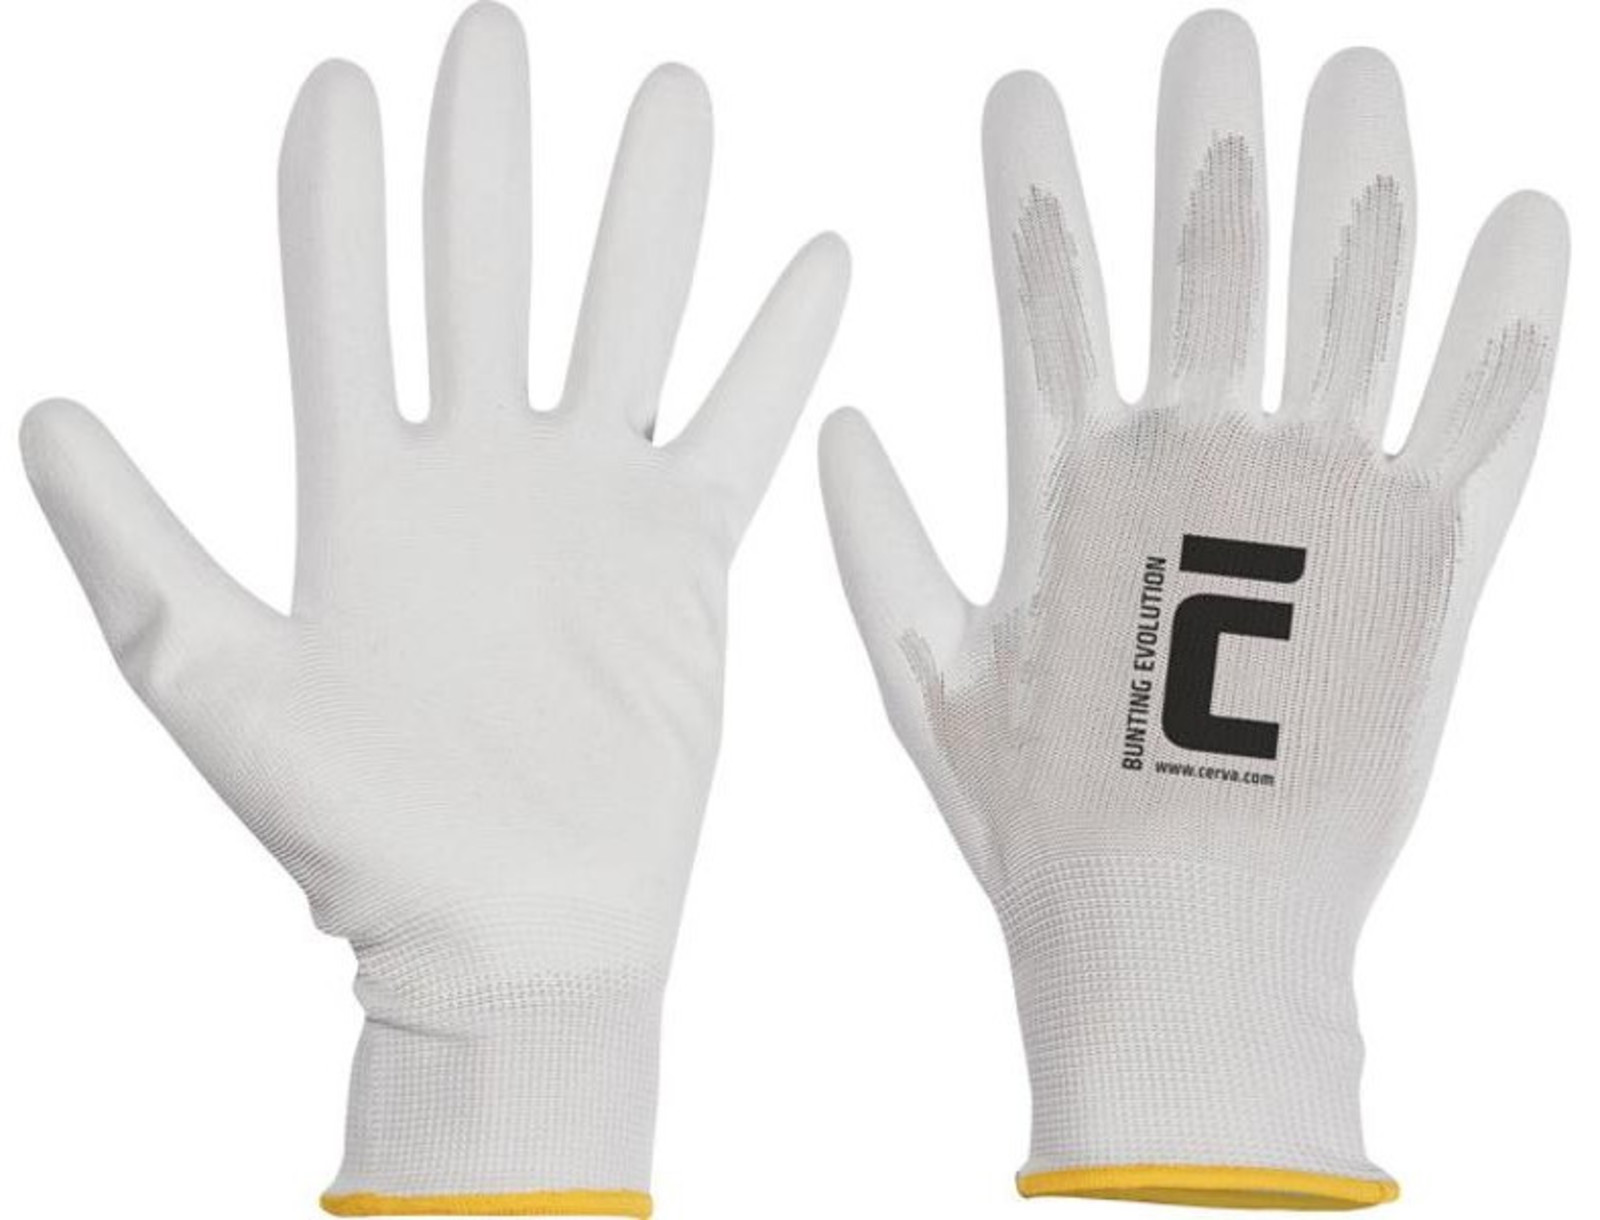 Polyesterové rukavice Bunting Evolution - veľkosť: 6/XS